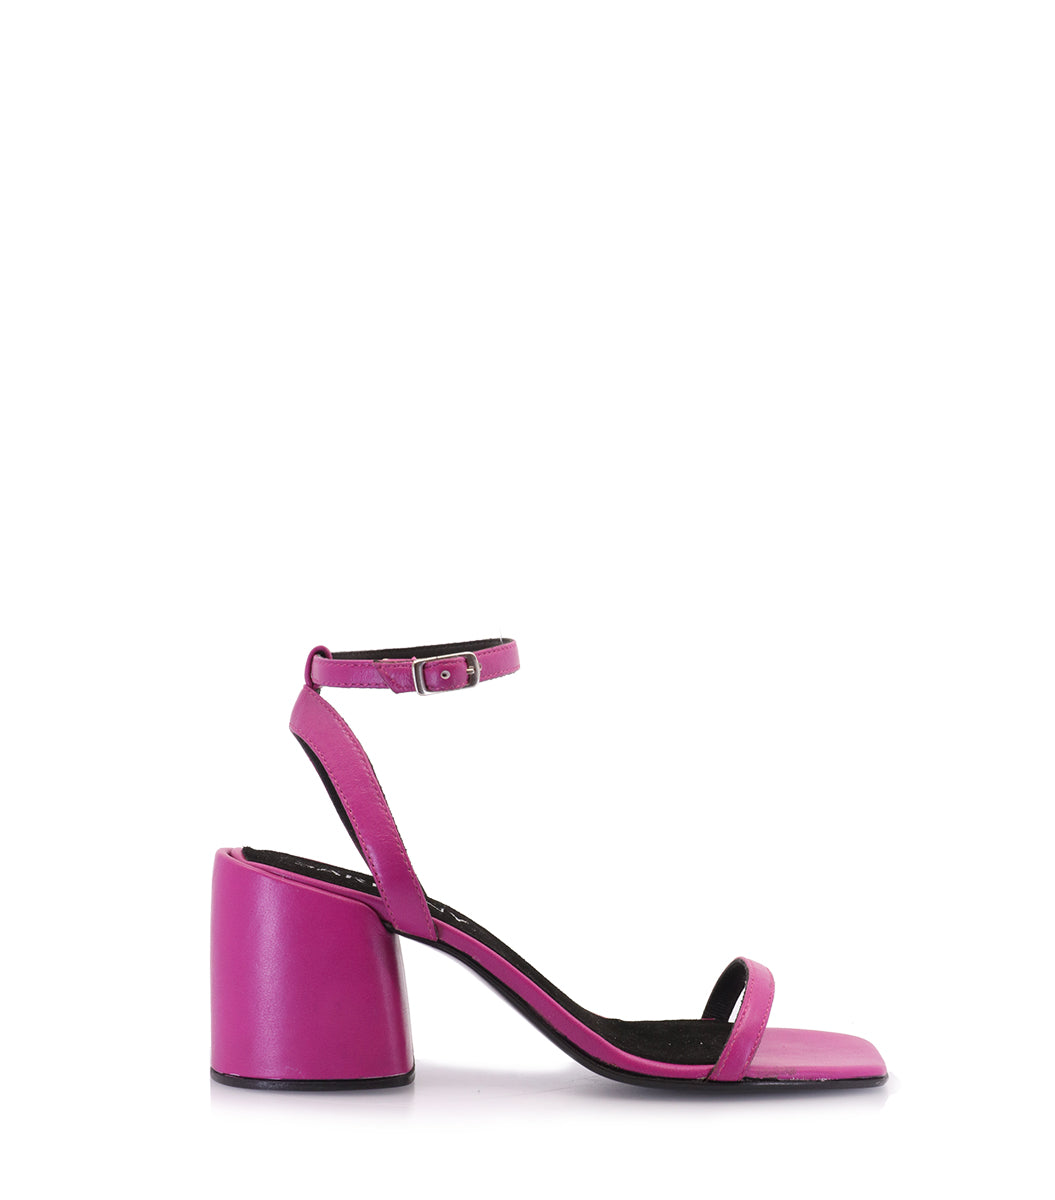 Allegra K Women's Glitter Crisscross Strap Block Heels Sandals Hot Pink 7 :  Target